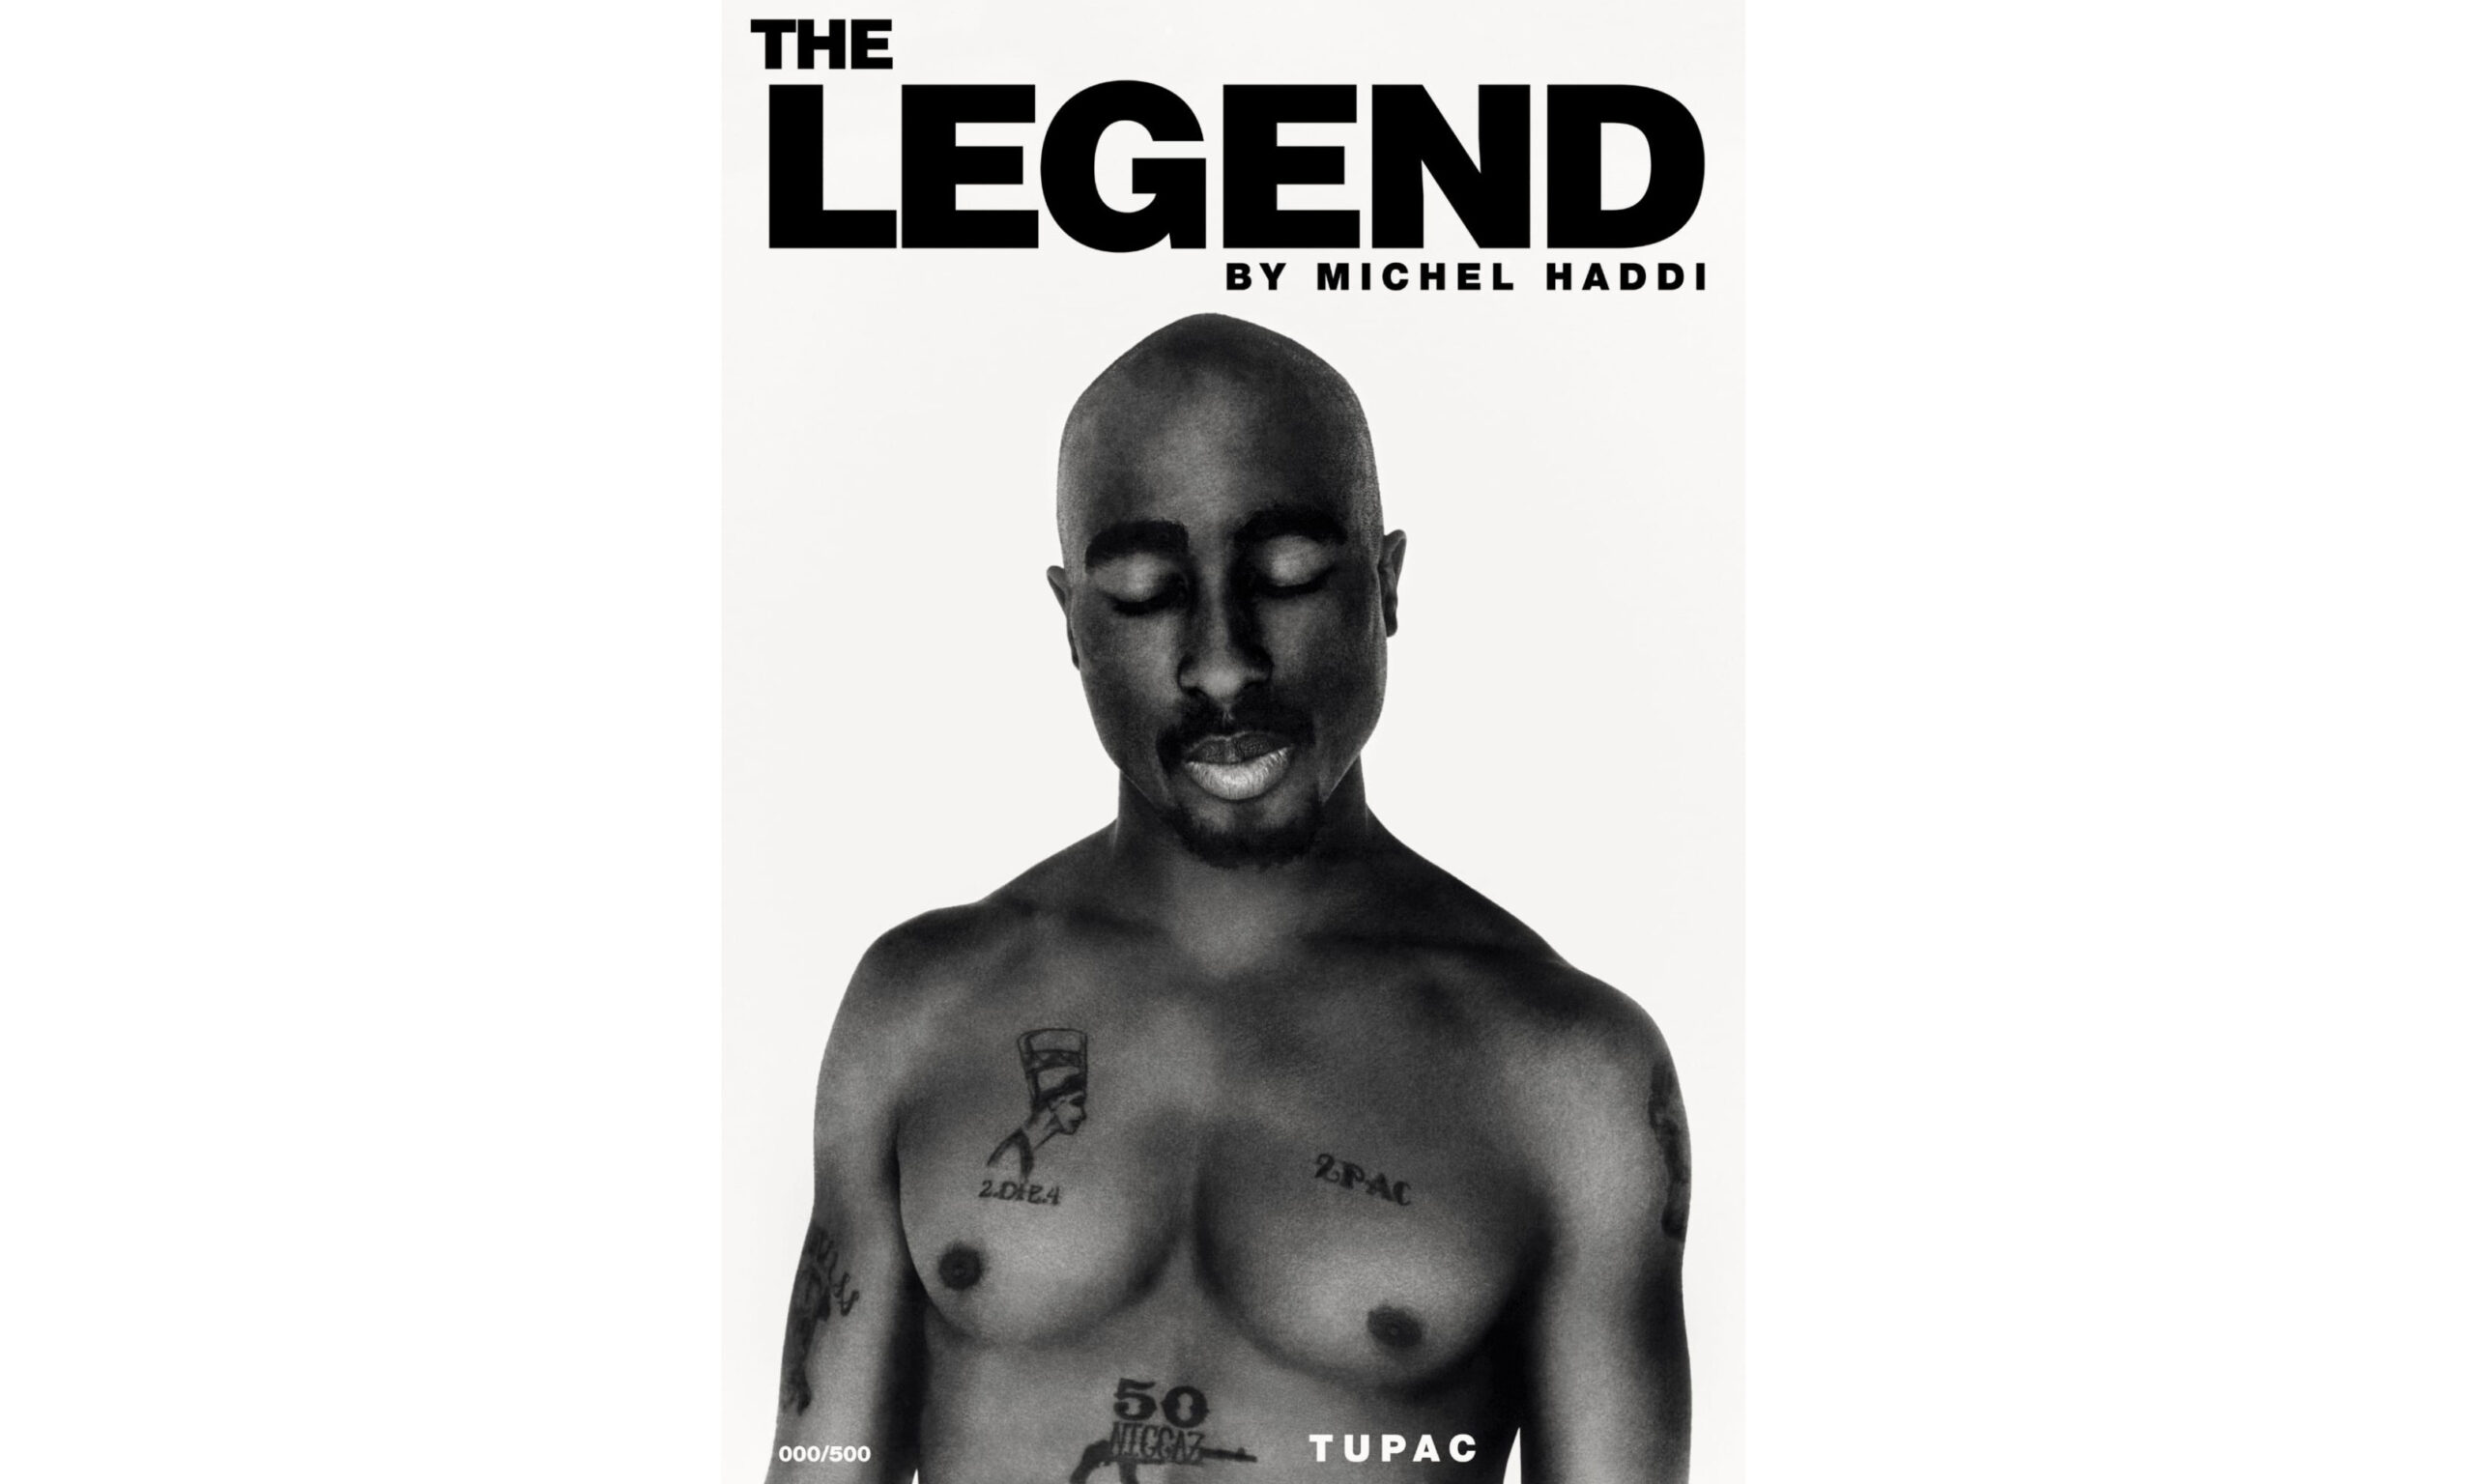 法国摄影师 Michel Haddi  将发行《TUPAC – THE LEGEND》照片书向 2Pac 致敬